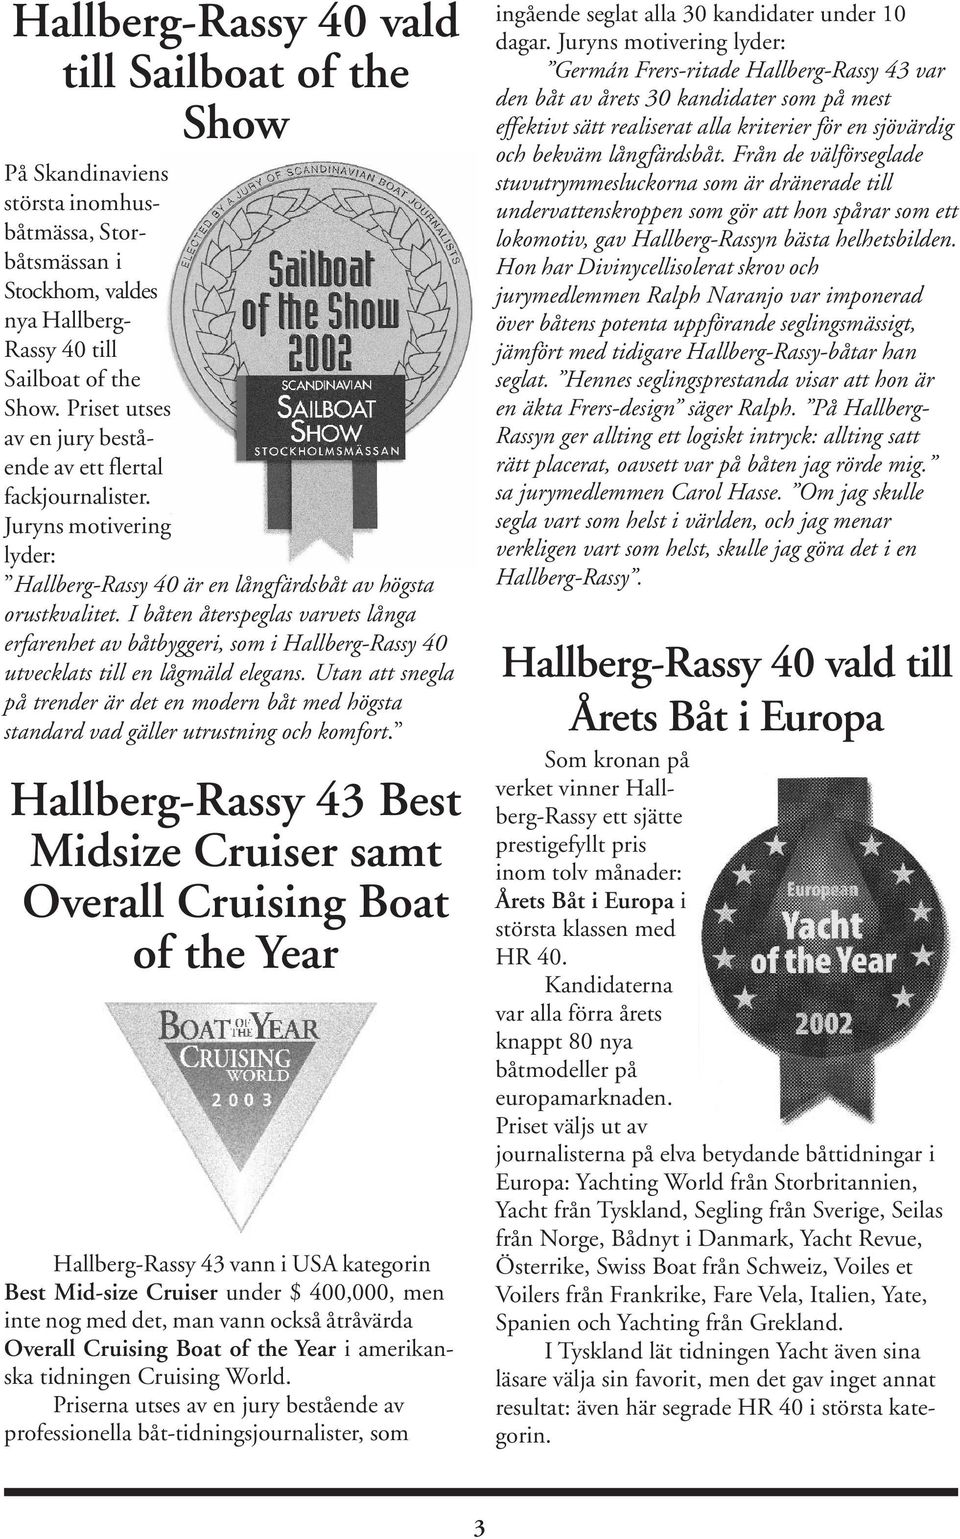 I båten återspeglas varvets långa erfarenhet av båtbyggeri, som i Hallberg-Rassy 40 utvecklats till en lågmäld elegans.